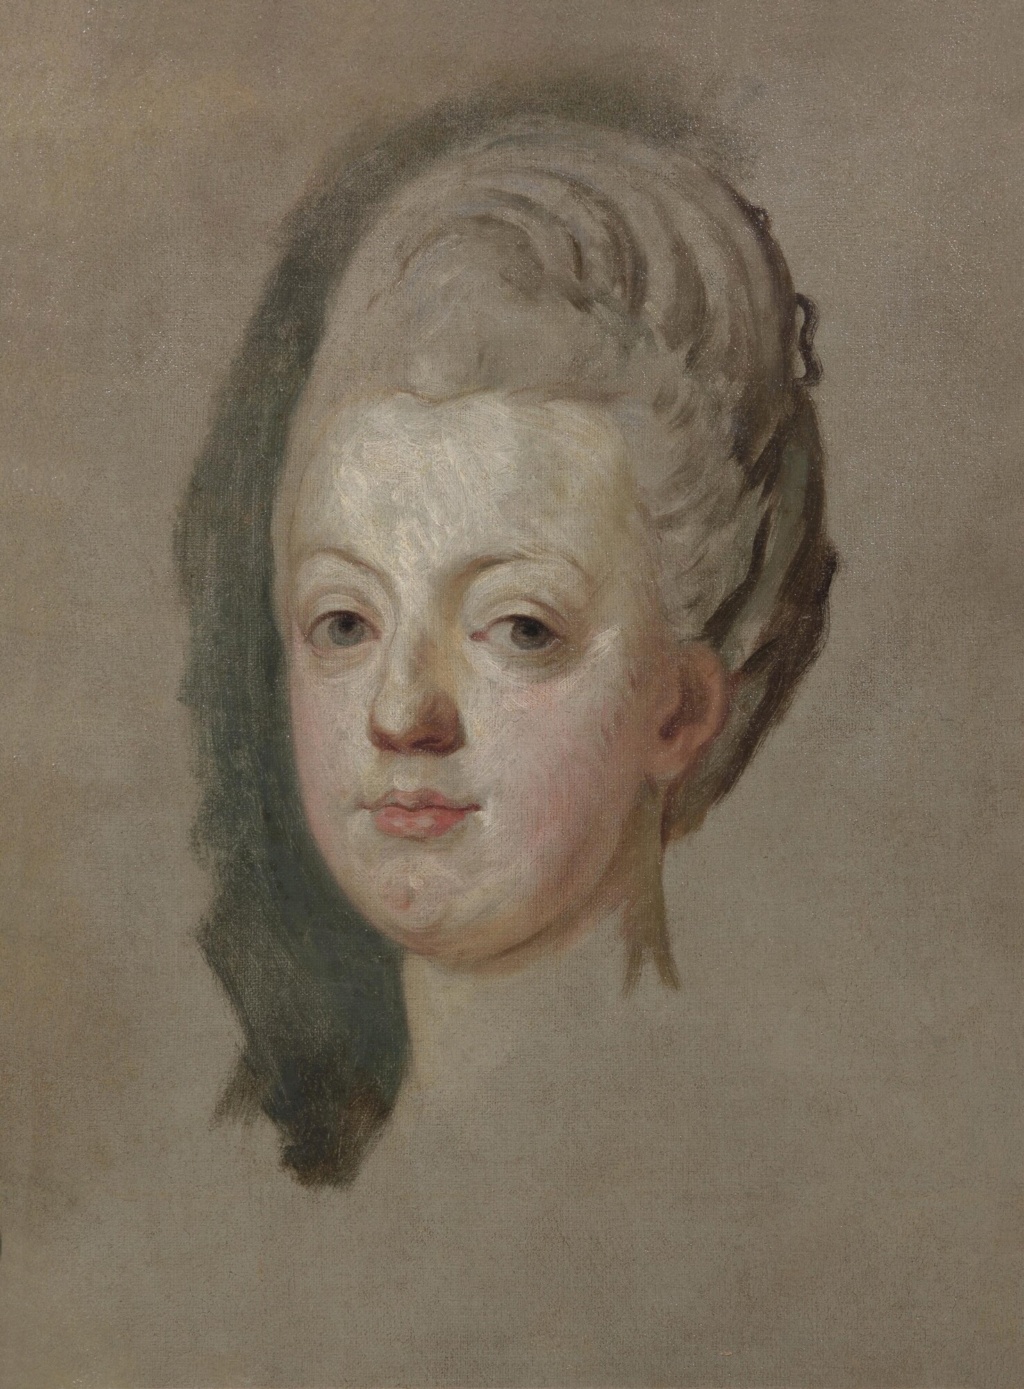 Portrait de Marie-Antoinette ou de Marie-Josèphe, par Meytens ? - Page 5 Downlo10